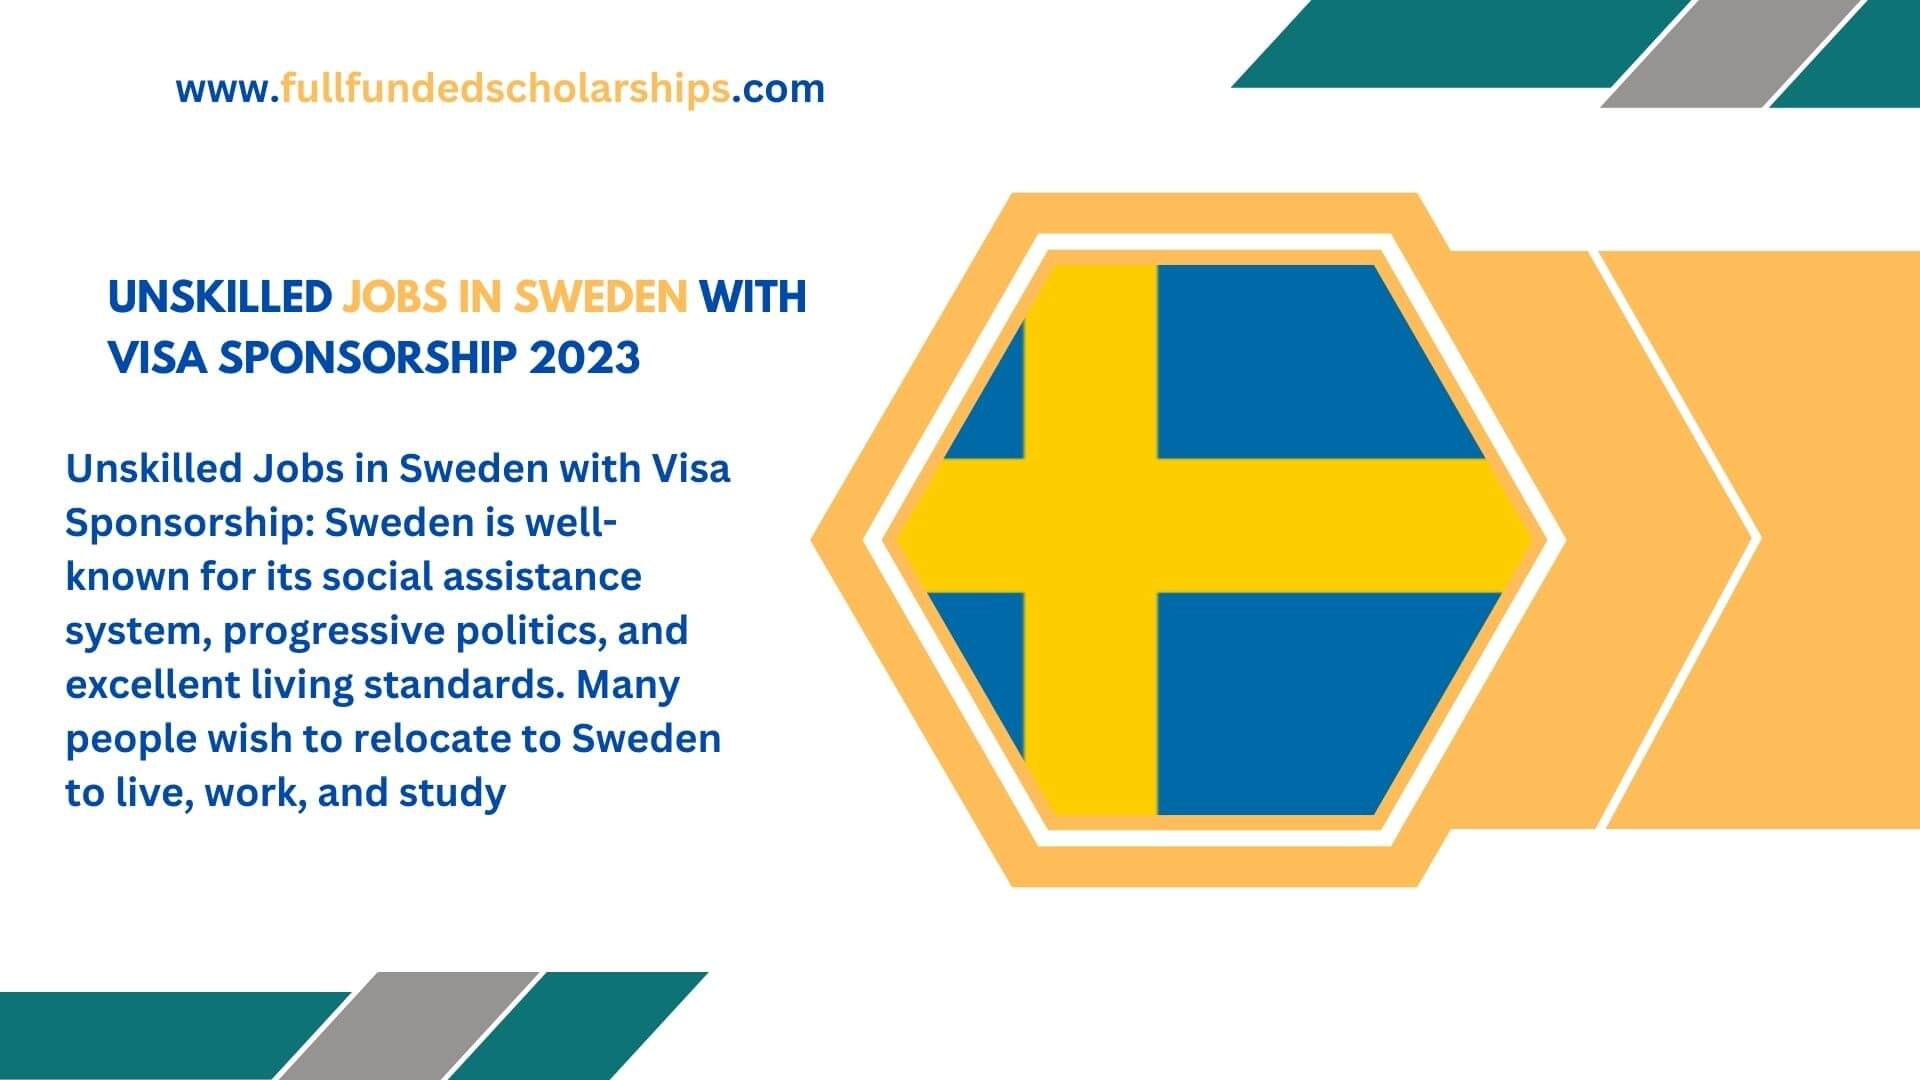 Unskilled Jobs in Sweden with Visa Sponsorship 2023